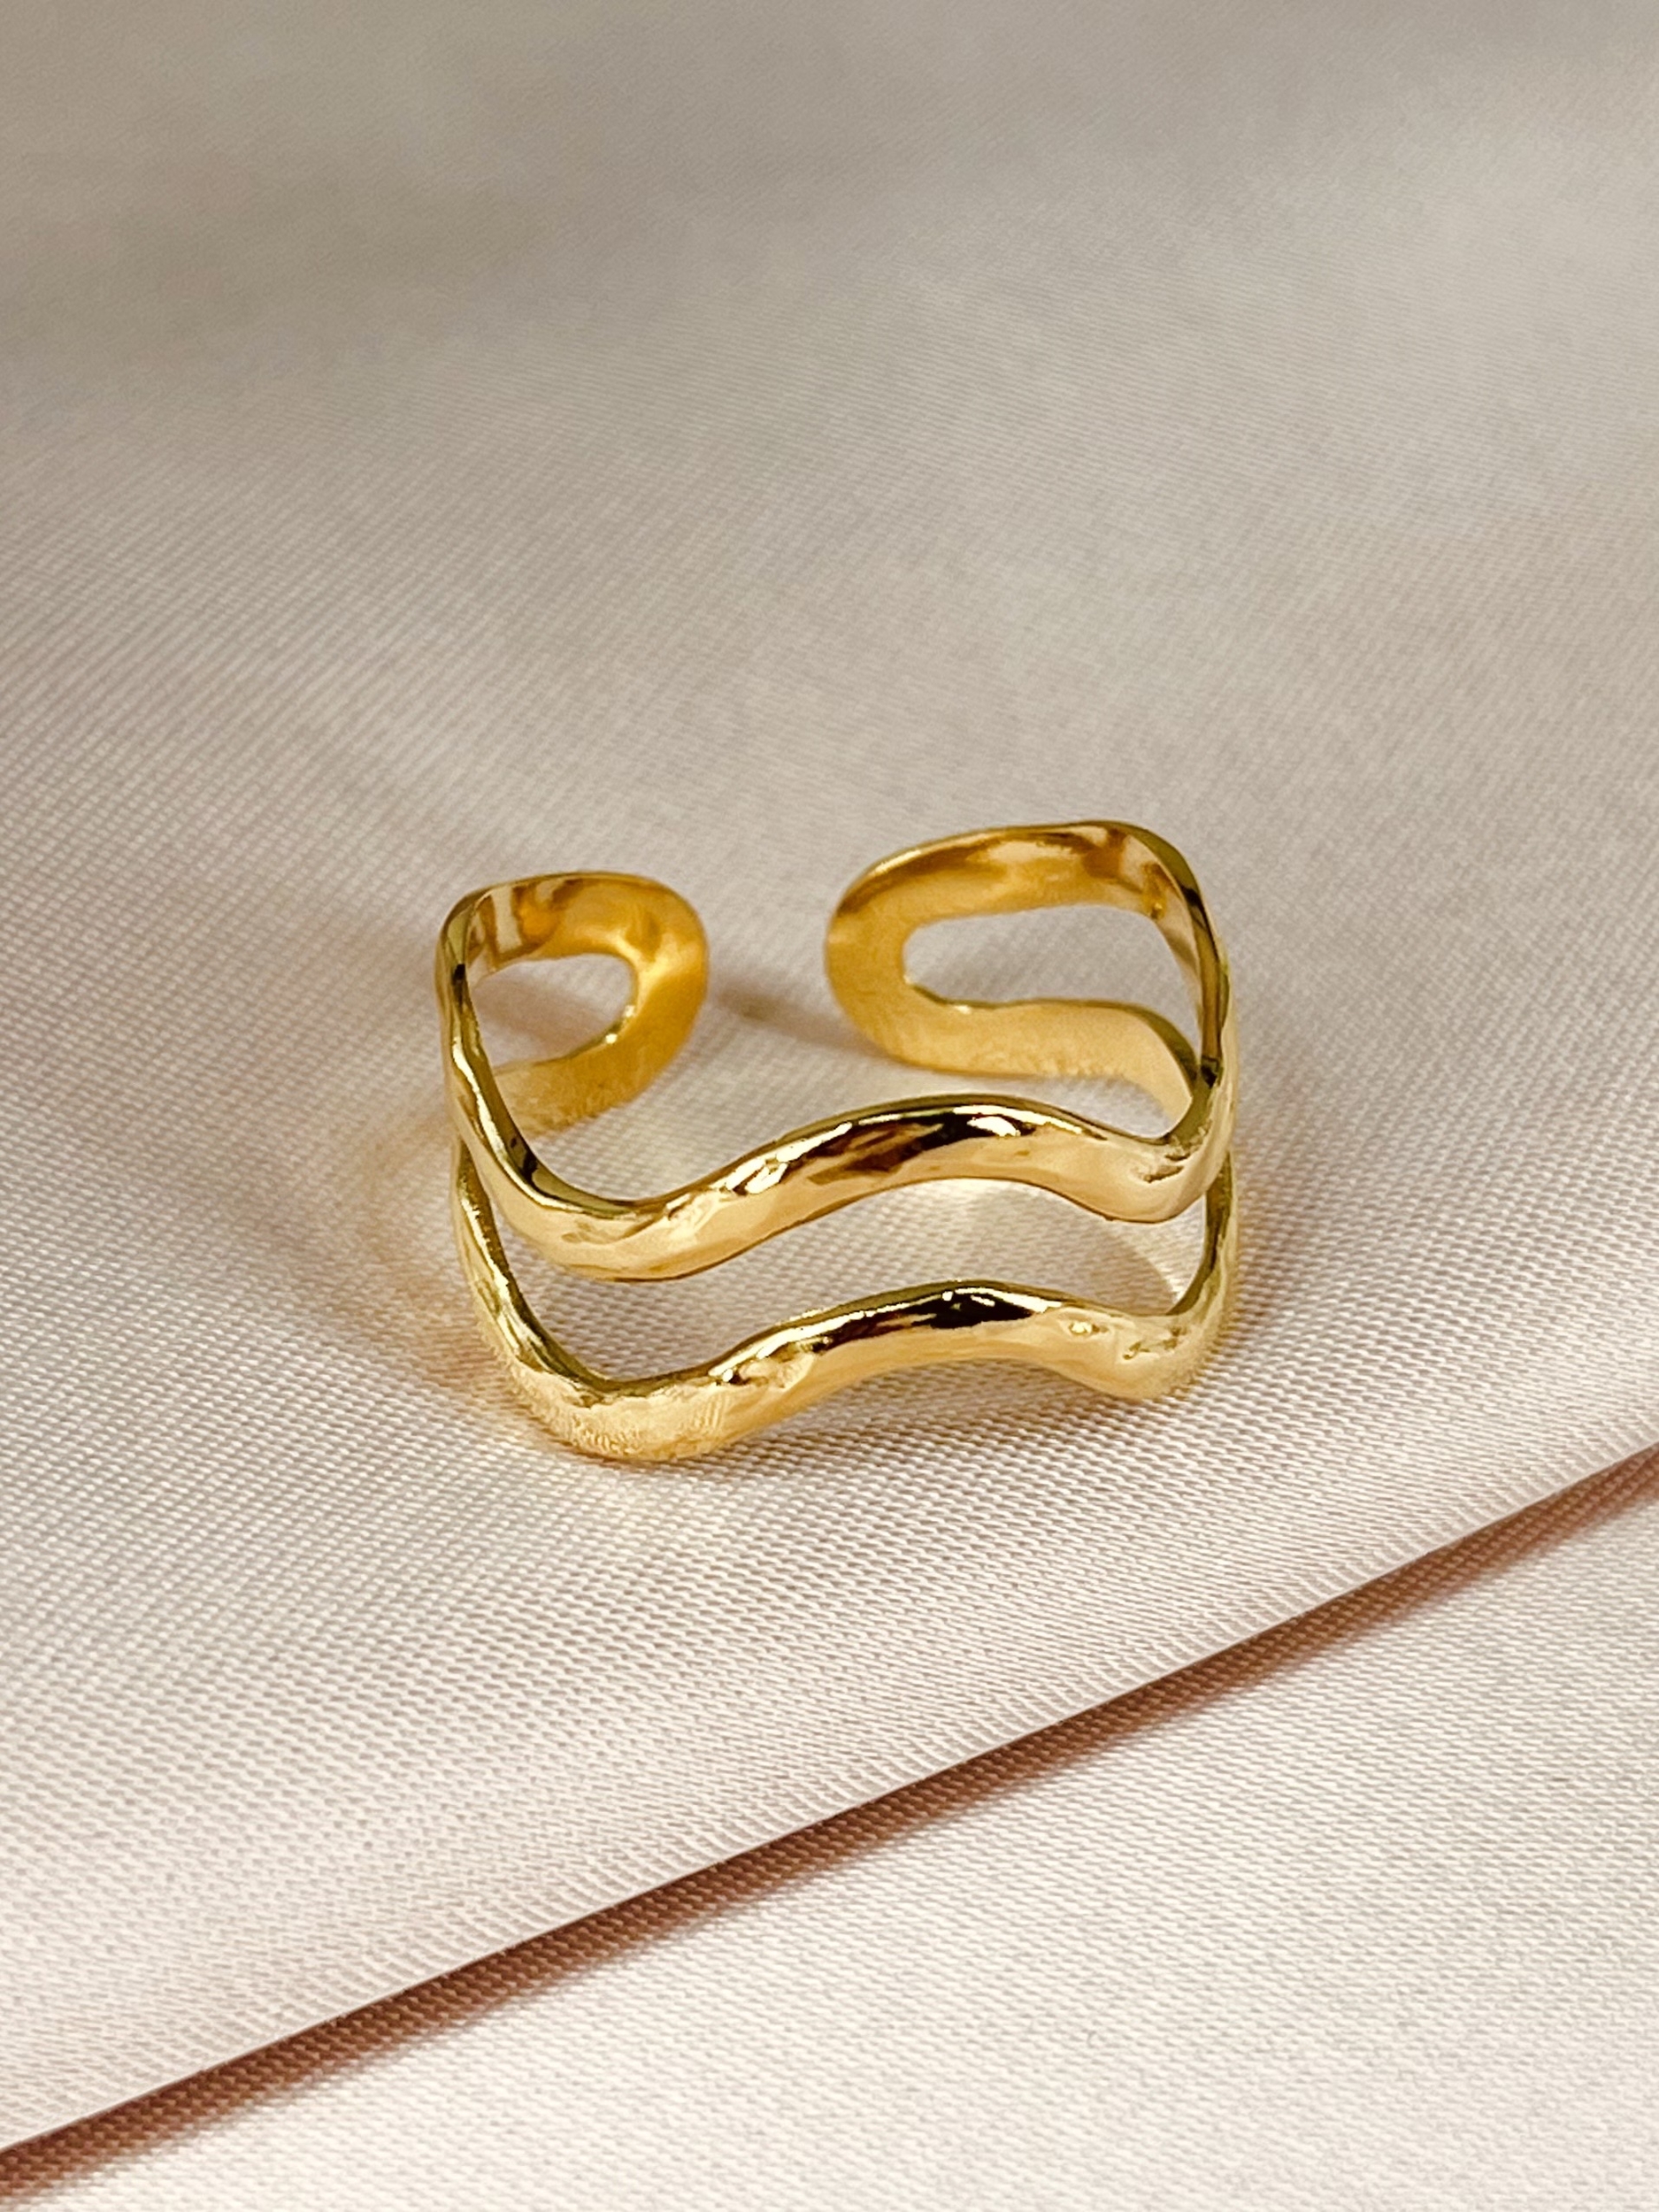 Bague acier inoxydable doré - taille ajustable perle des iles